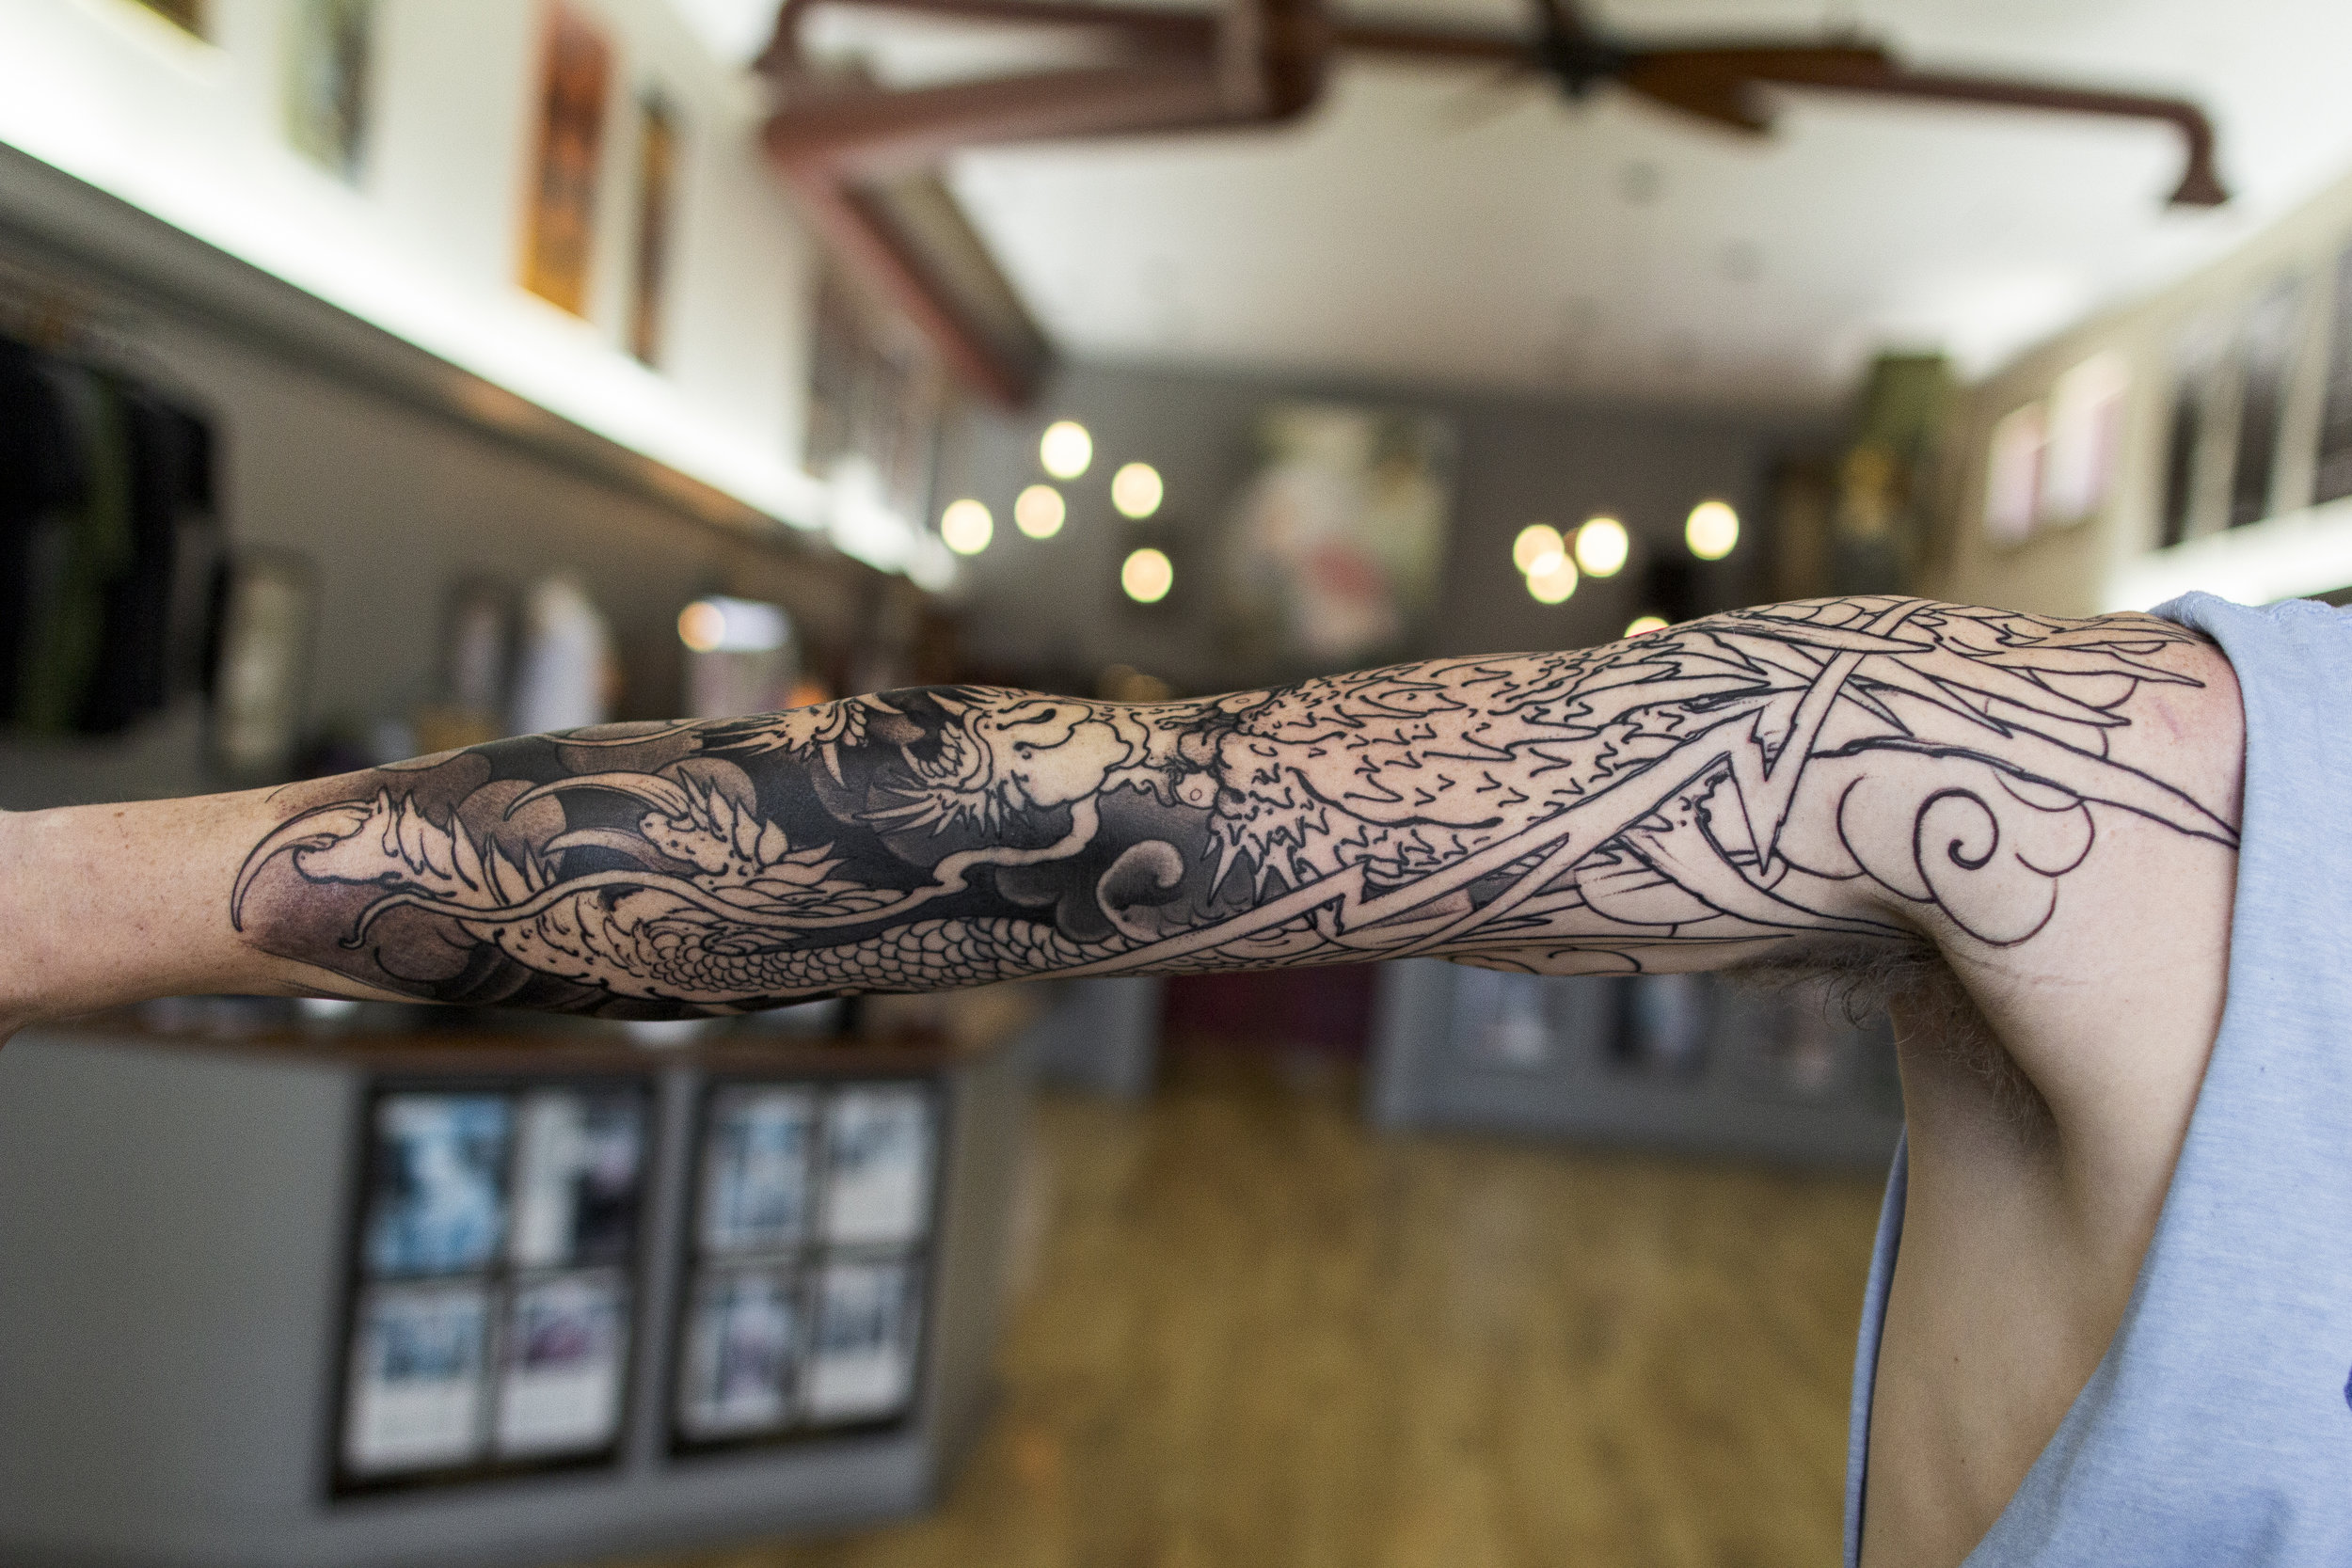 Jeff Buckley Hand Tattoo  rJeffBuckley